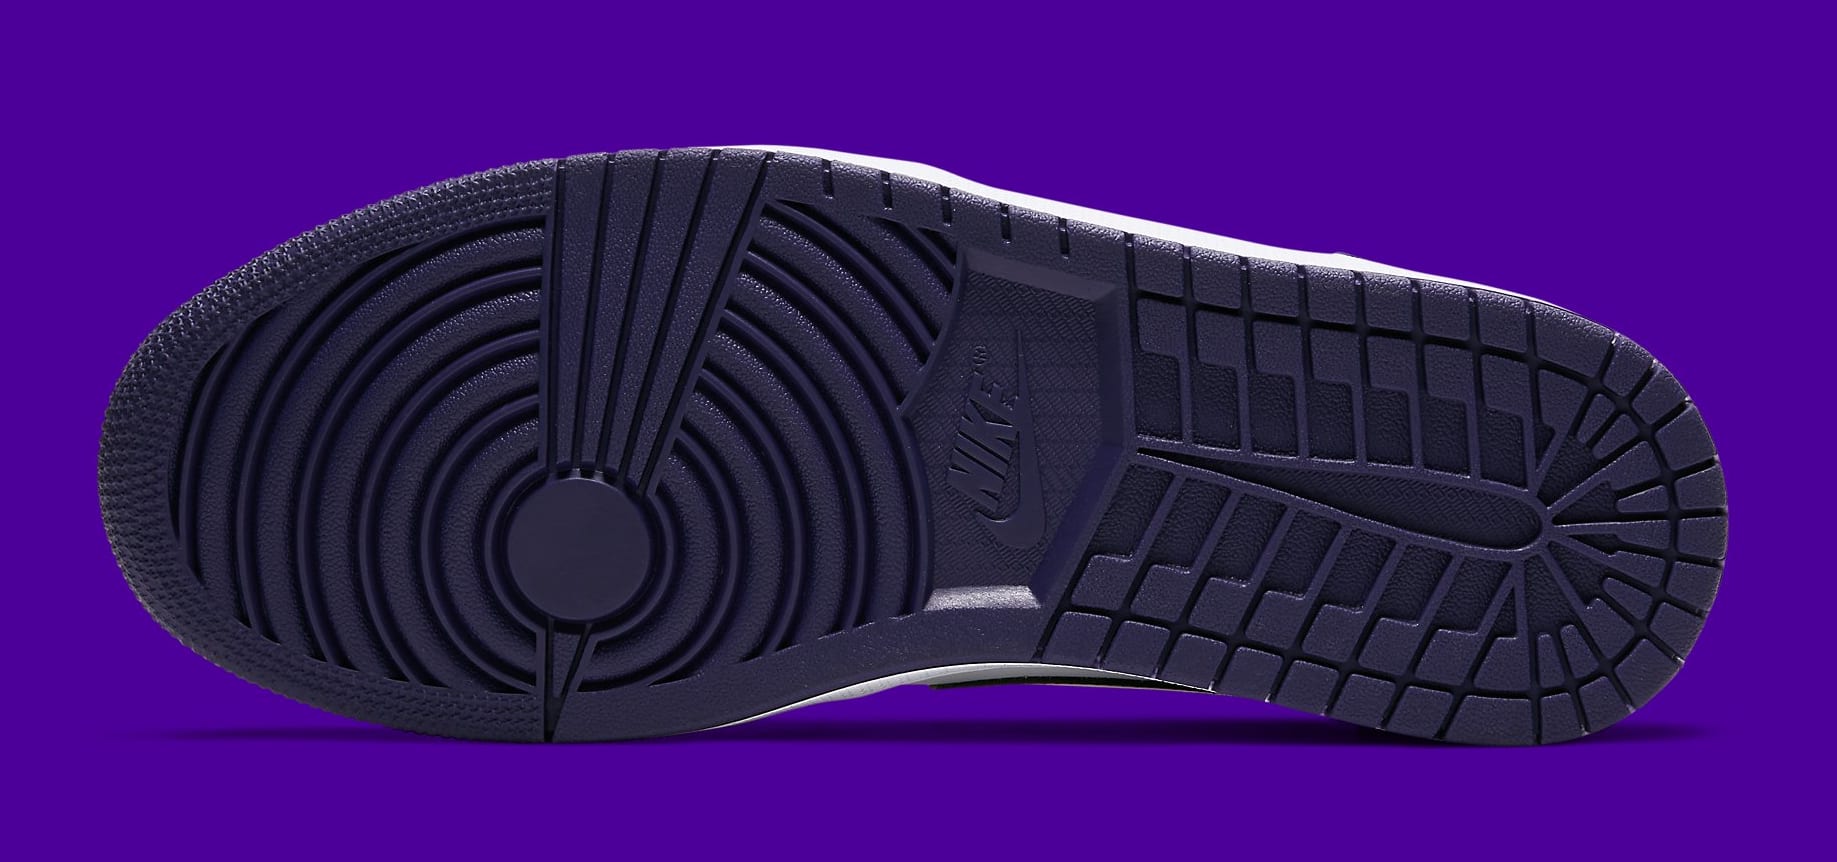 air-jordan-1-low-court-purple-553558-125-sole